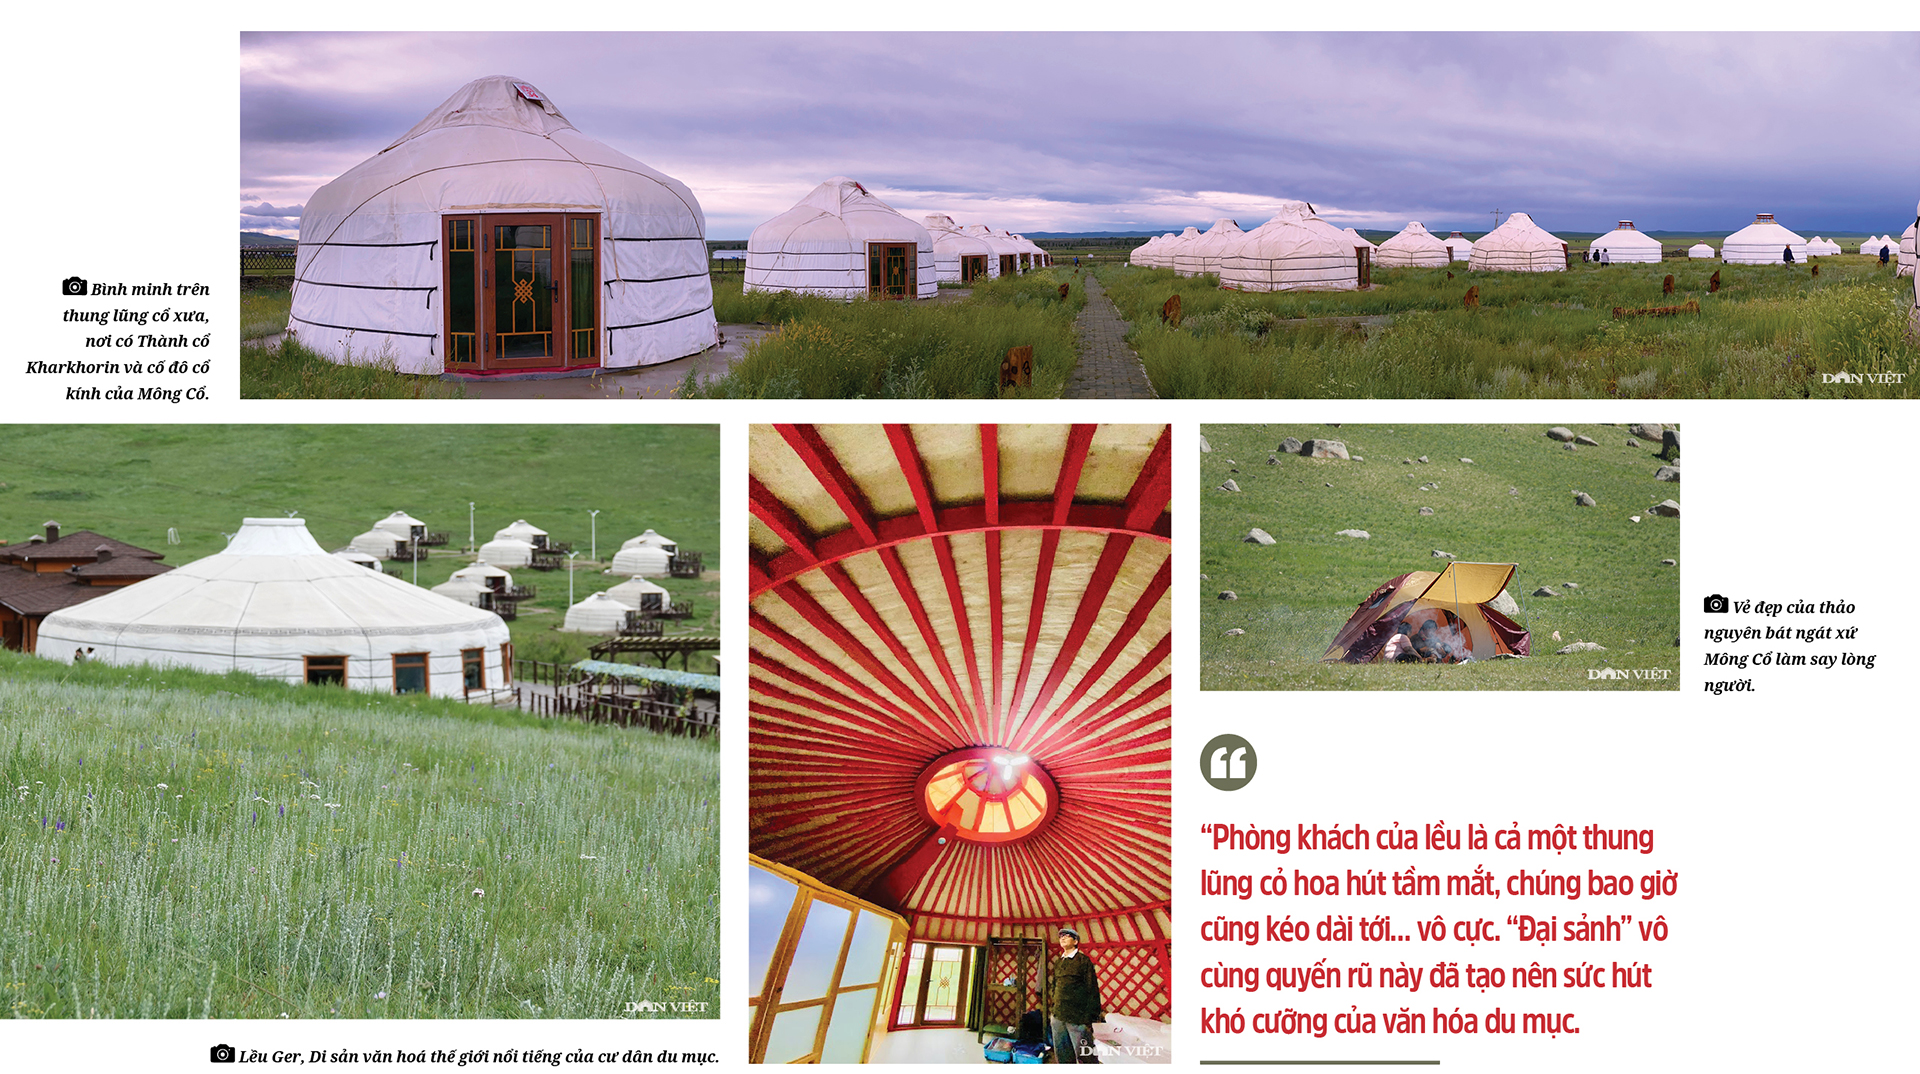 Khám phá Mông Cổ: Ở lều Ger giữa mùi hương tan chảy của cỏ hoa (Bài 2) - Ảnh 4.